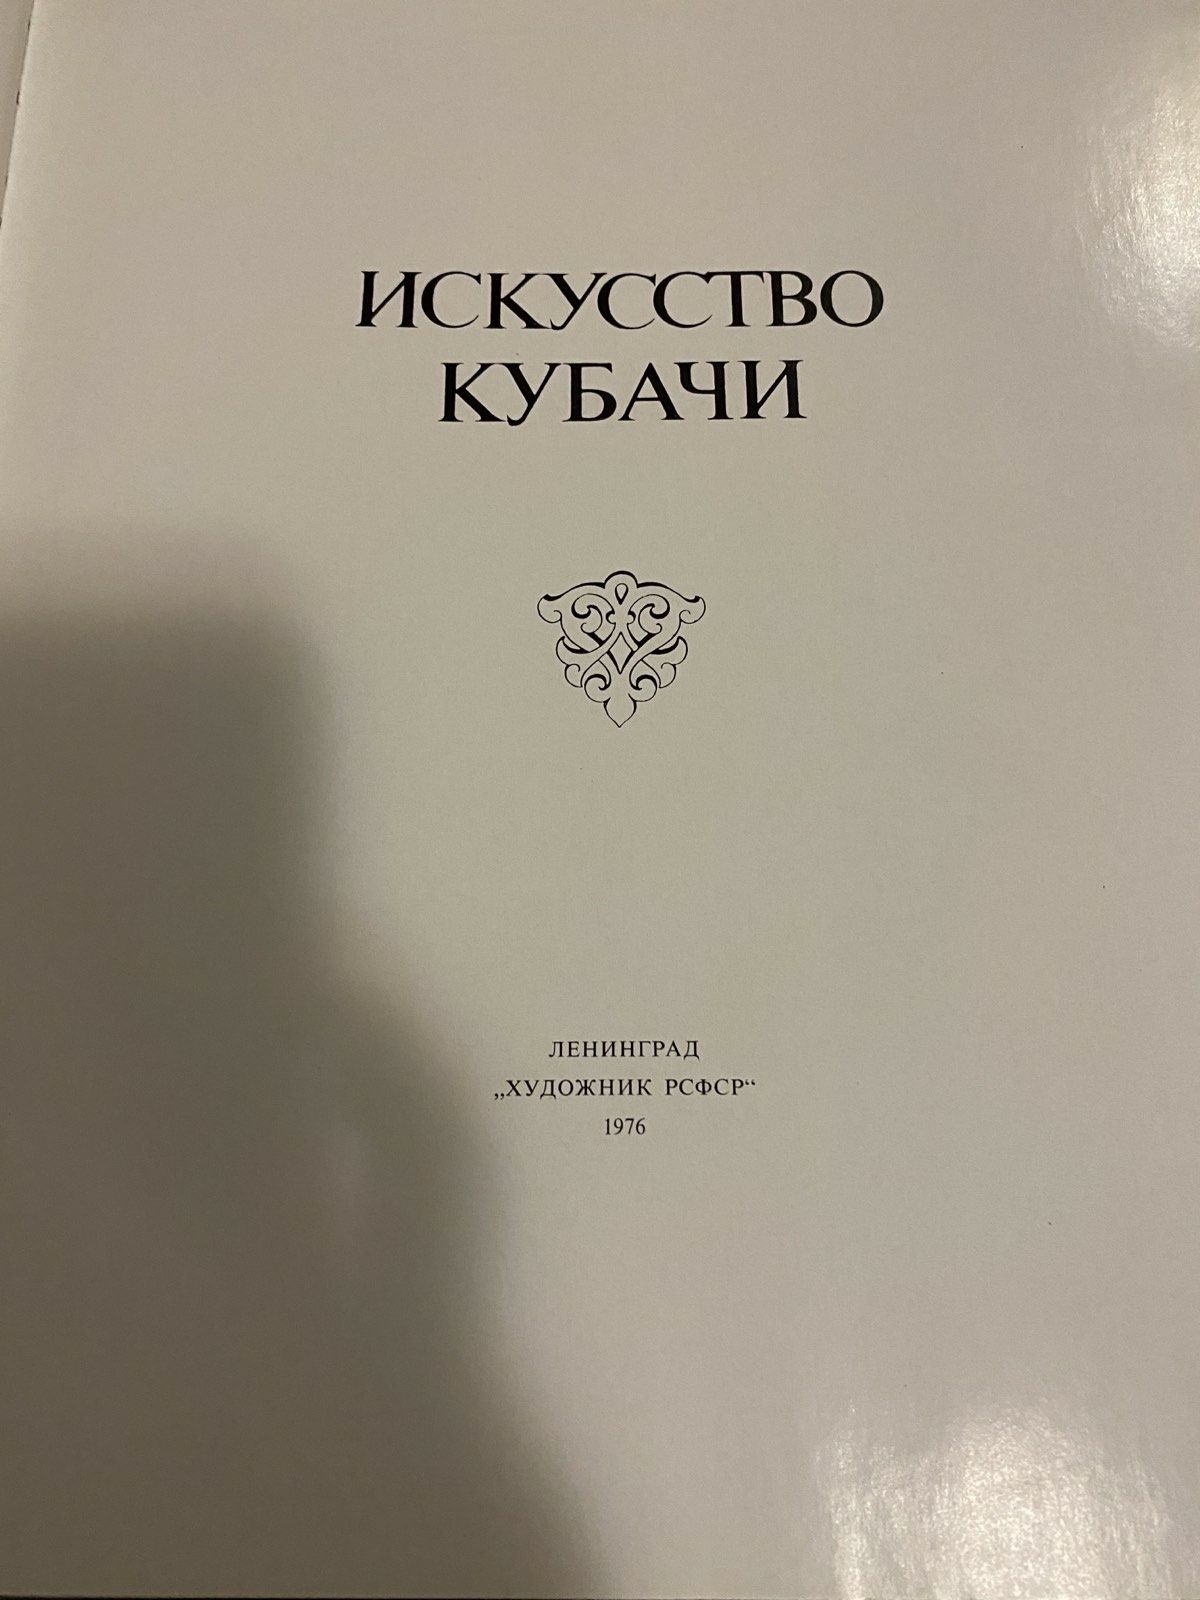 Книга Искусство Кубачи,1976,каталог, репродукции ювелирных изделий